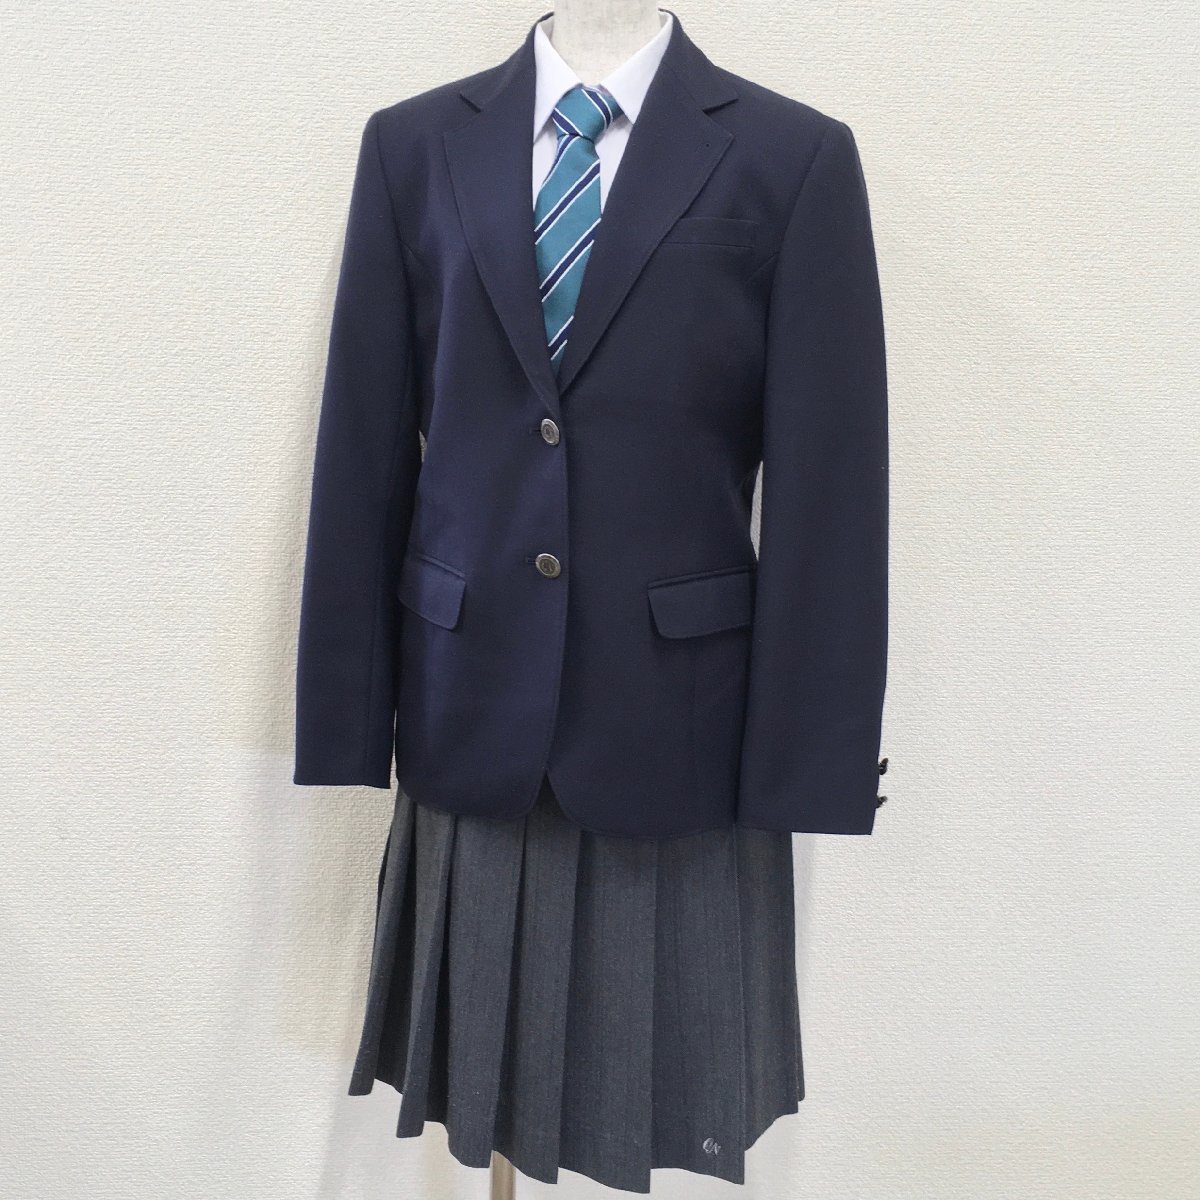 A119/T825 (используется) Префектура Tochigi Koyama Nishi High School Форма 4 балла/165A/W69/длина 58/пиджак/зимняя юбка/галстук/темно -серая/зеленая полоса/зимняя одежда/выпускники